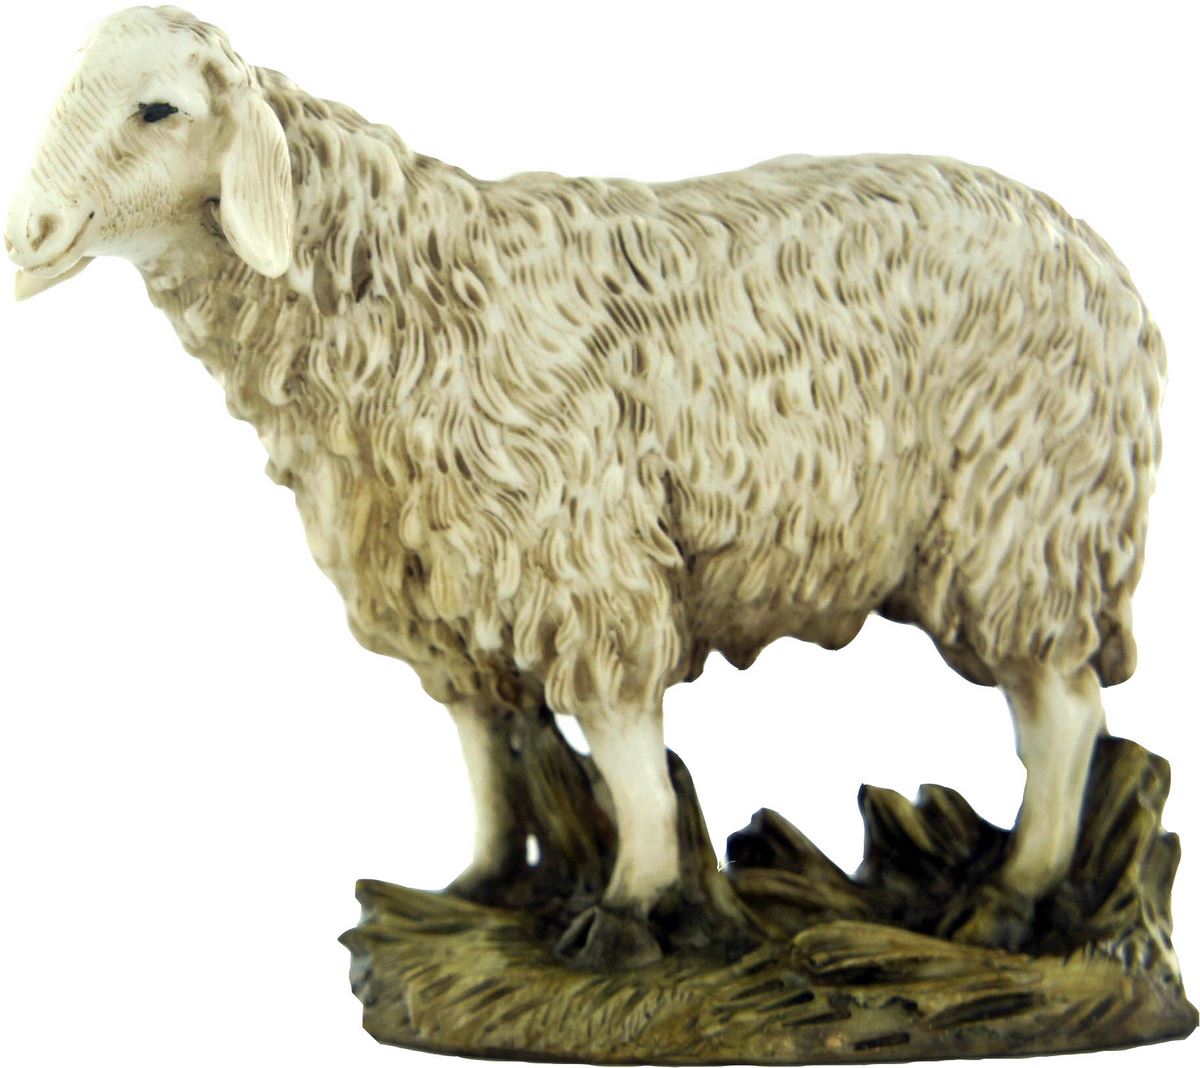 statuine presepe: pecora con testa alta linea martino landi per presepe da cm 12